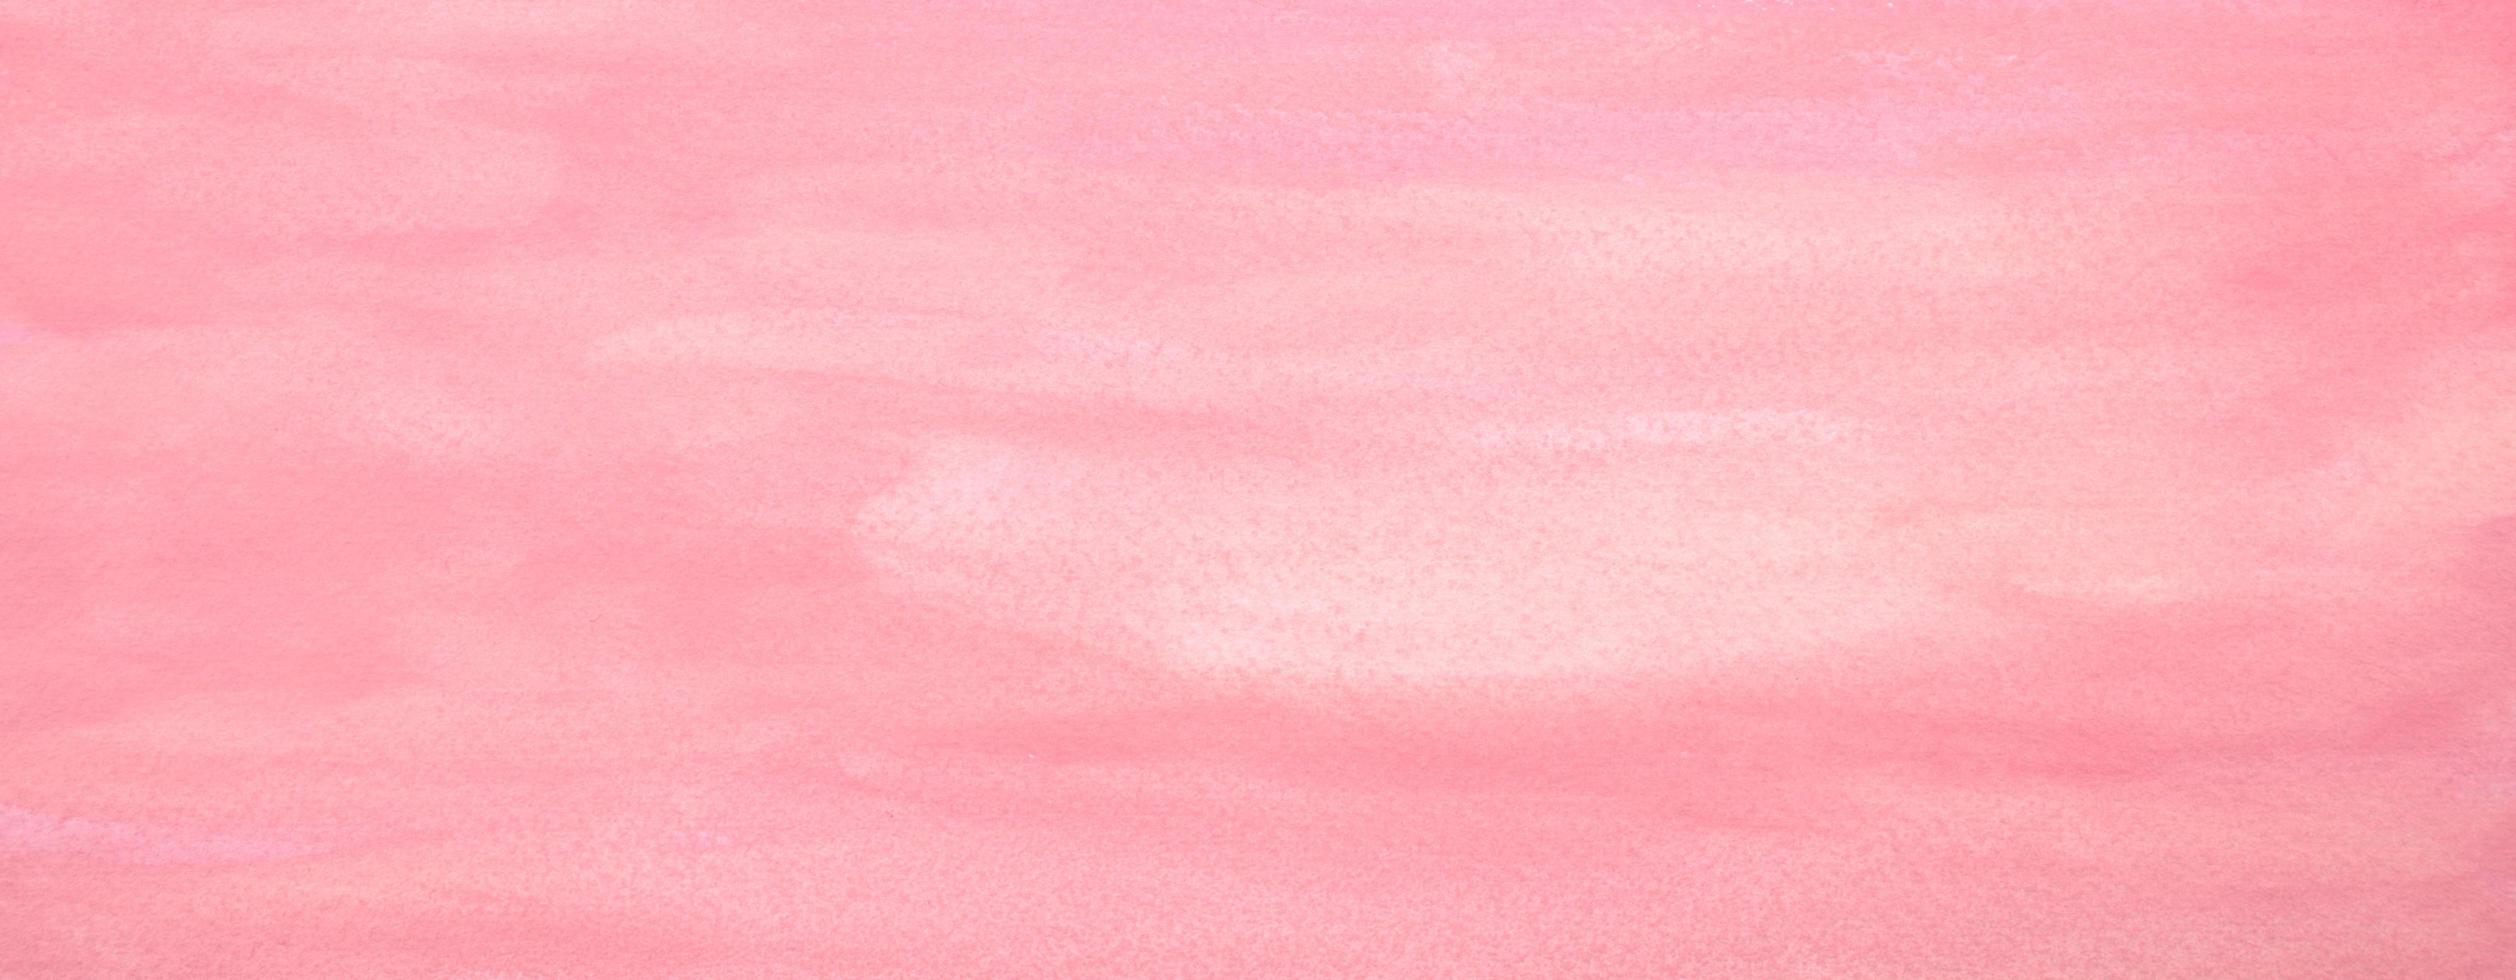 rosa pastell akvarellmålad fläck på papper. foto